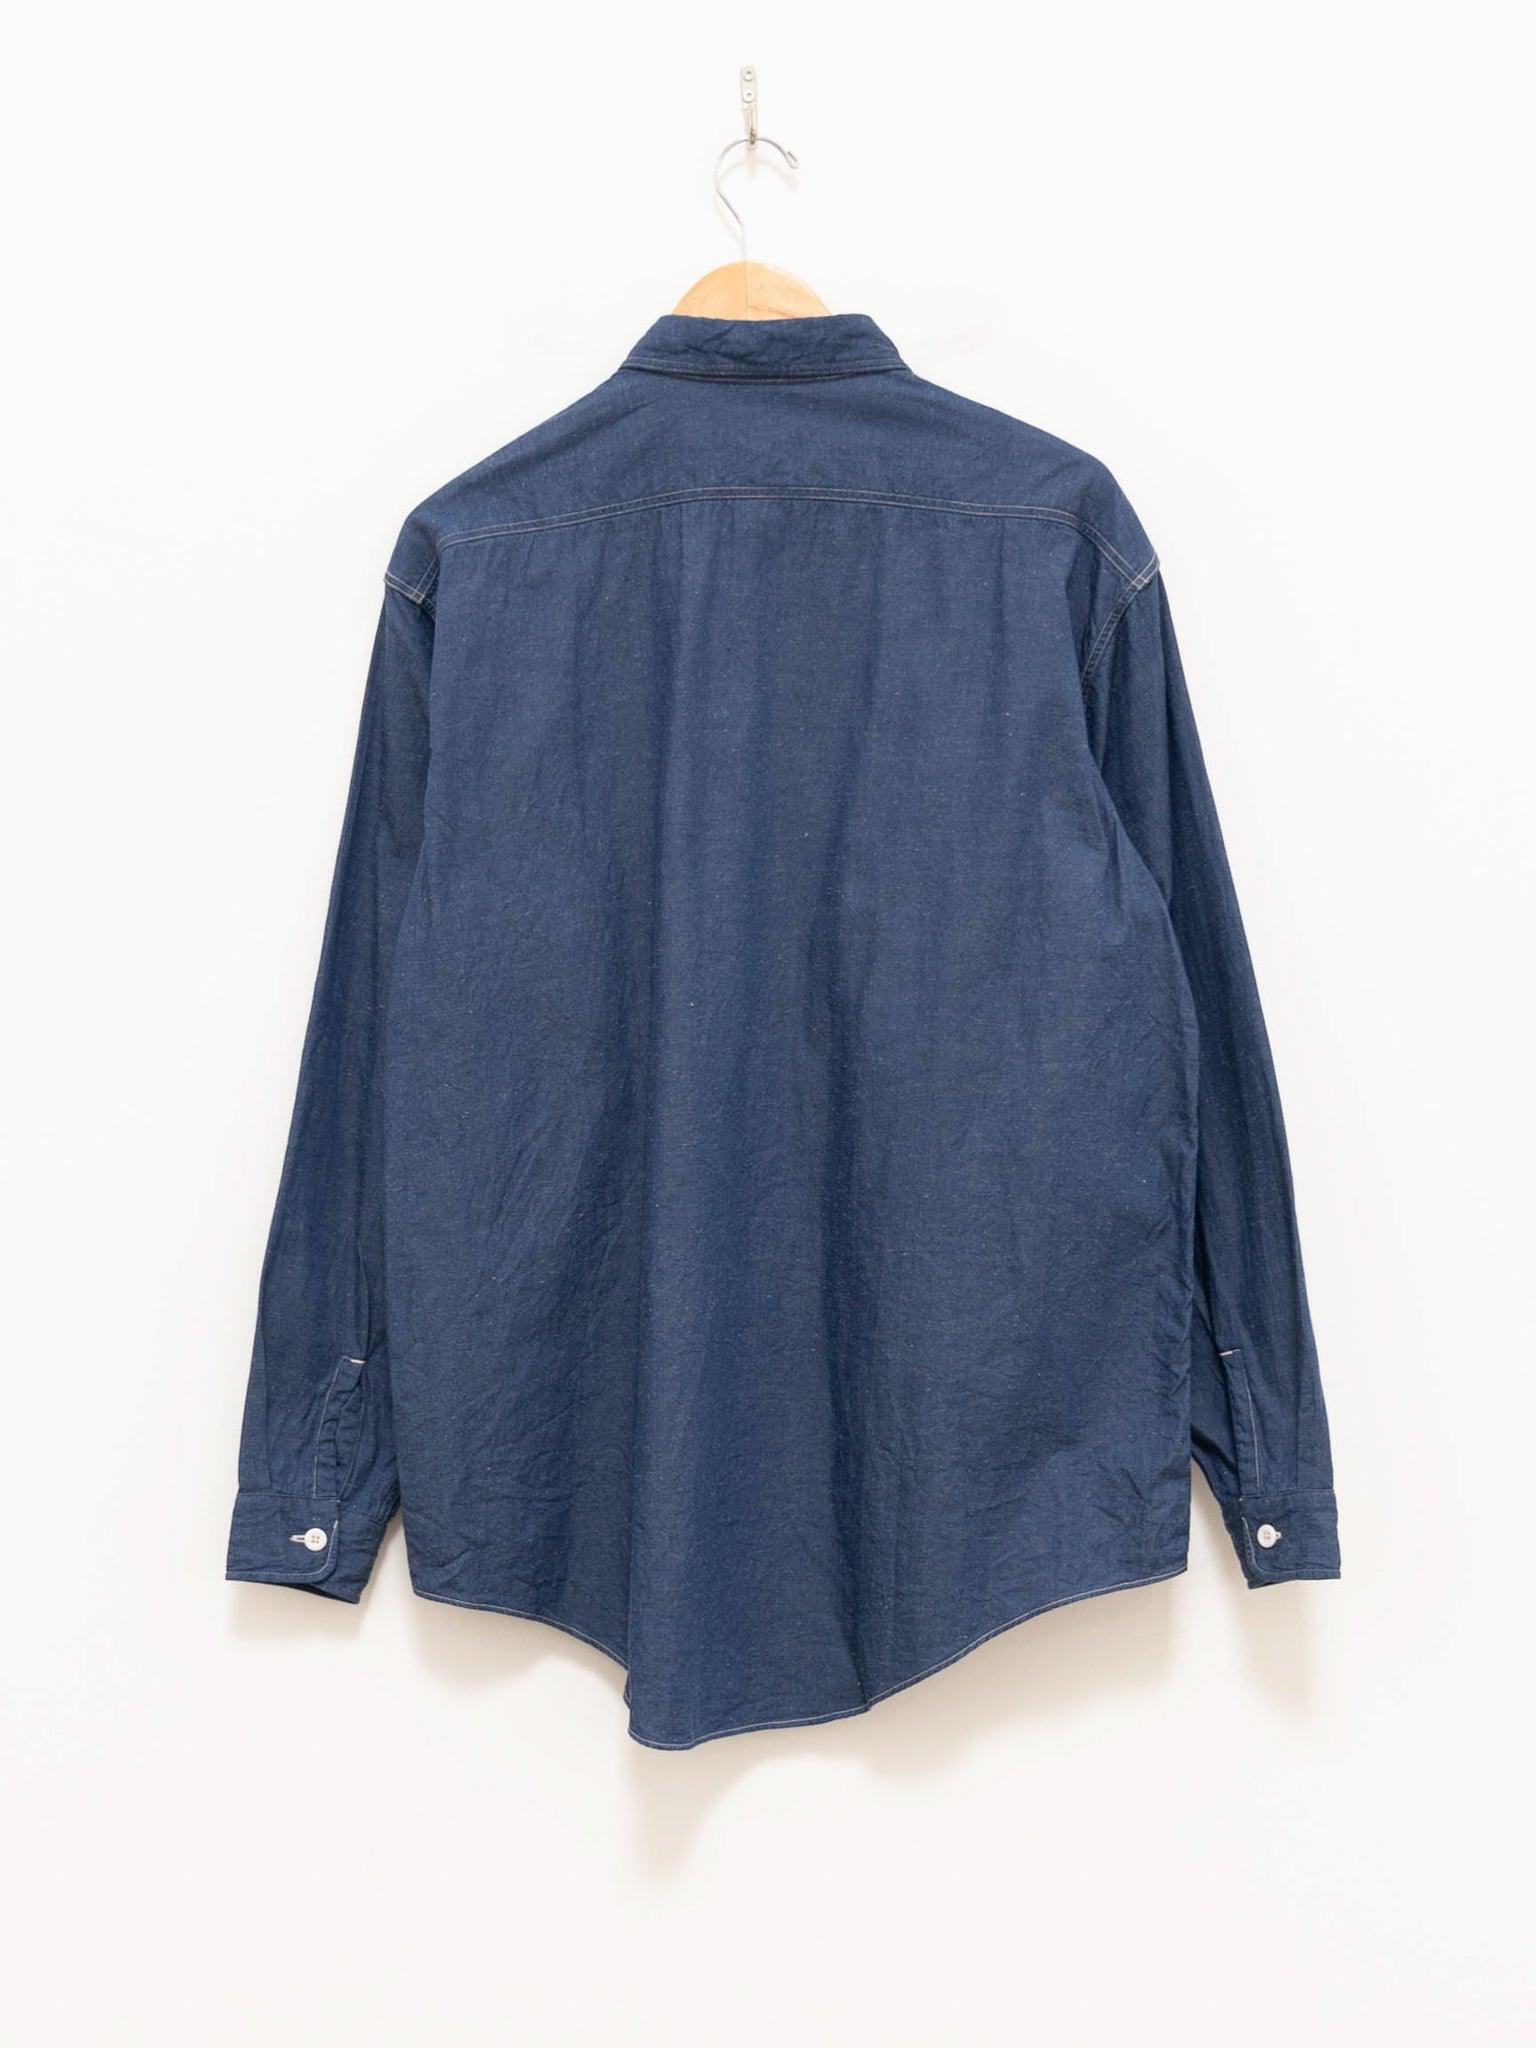 Namu Shop - Kaptain Sunshine Suvin Hemp Light Denim Work Shirt - Blue